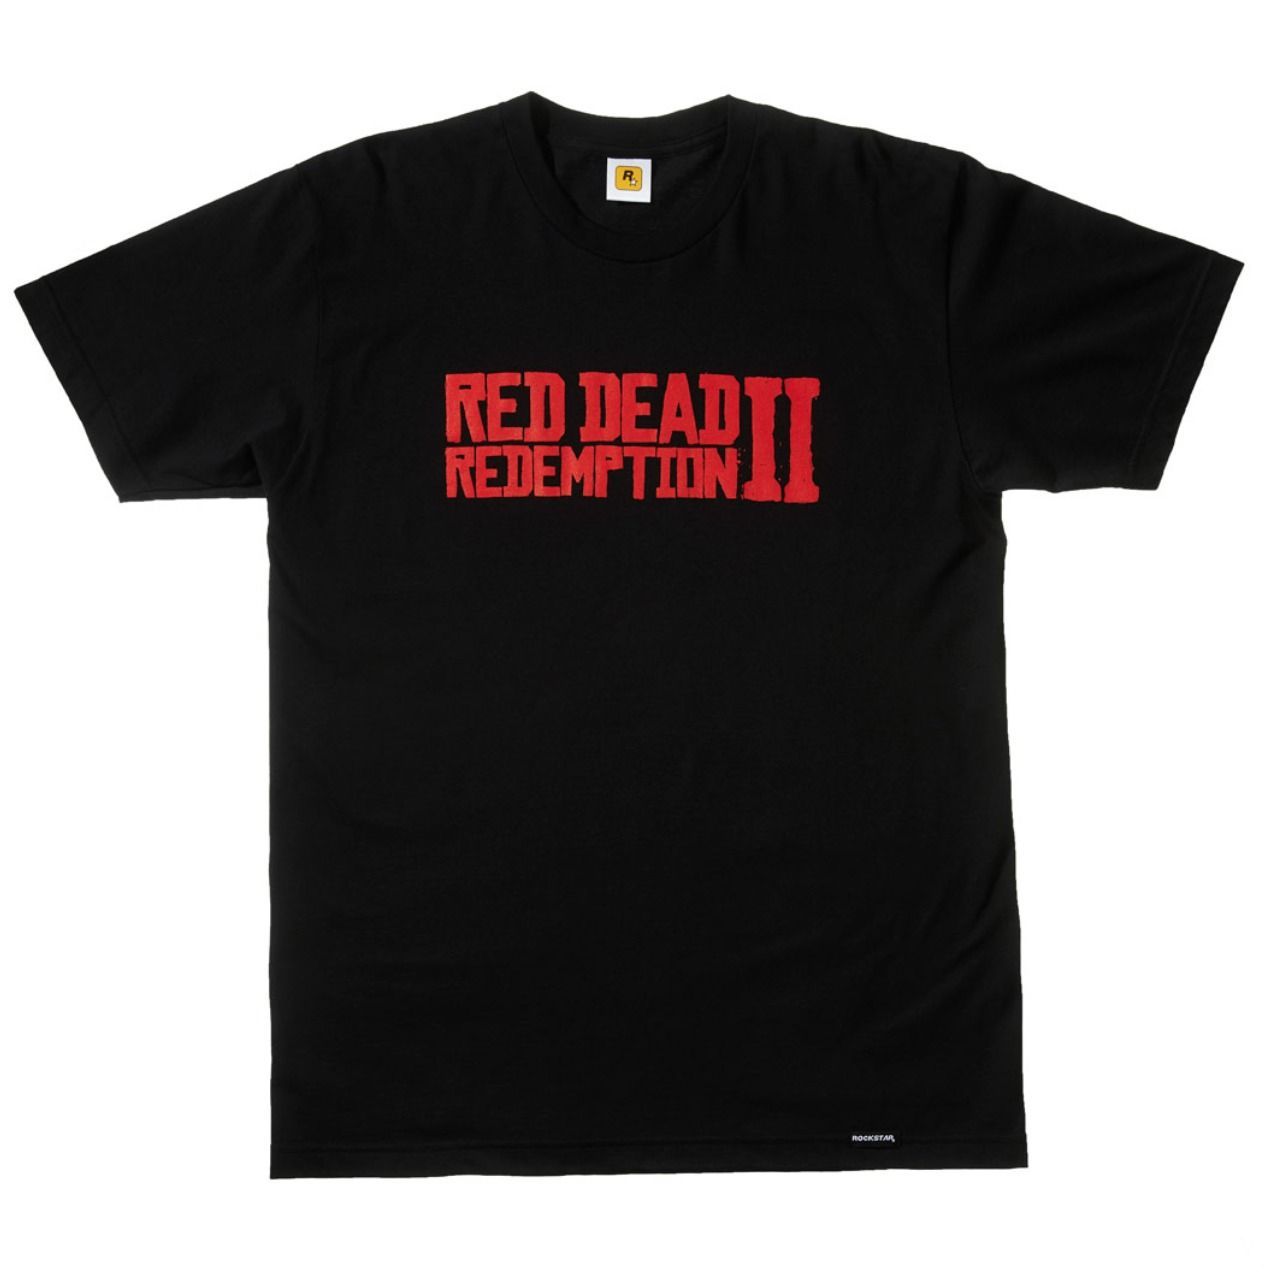 Red Dead Redemption 2 presenta su colección de merchandising limitado